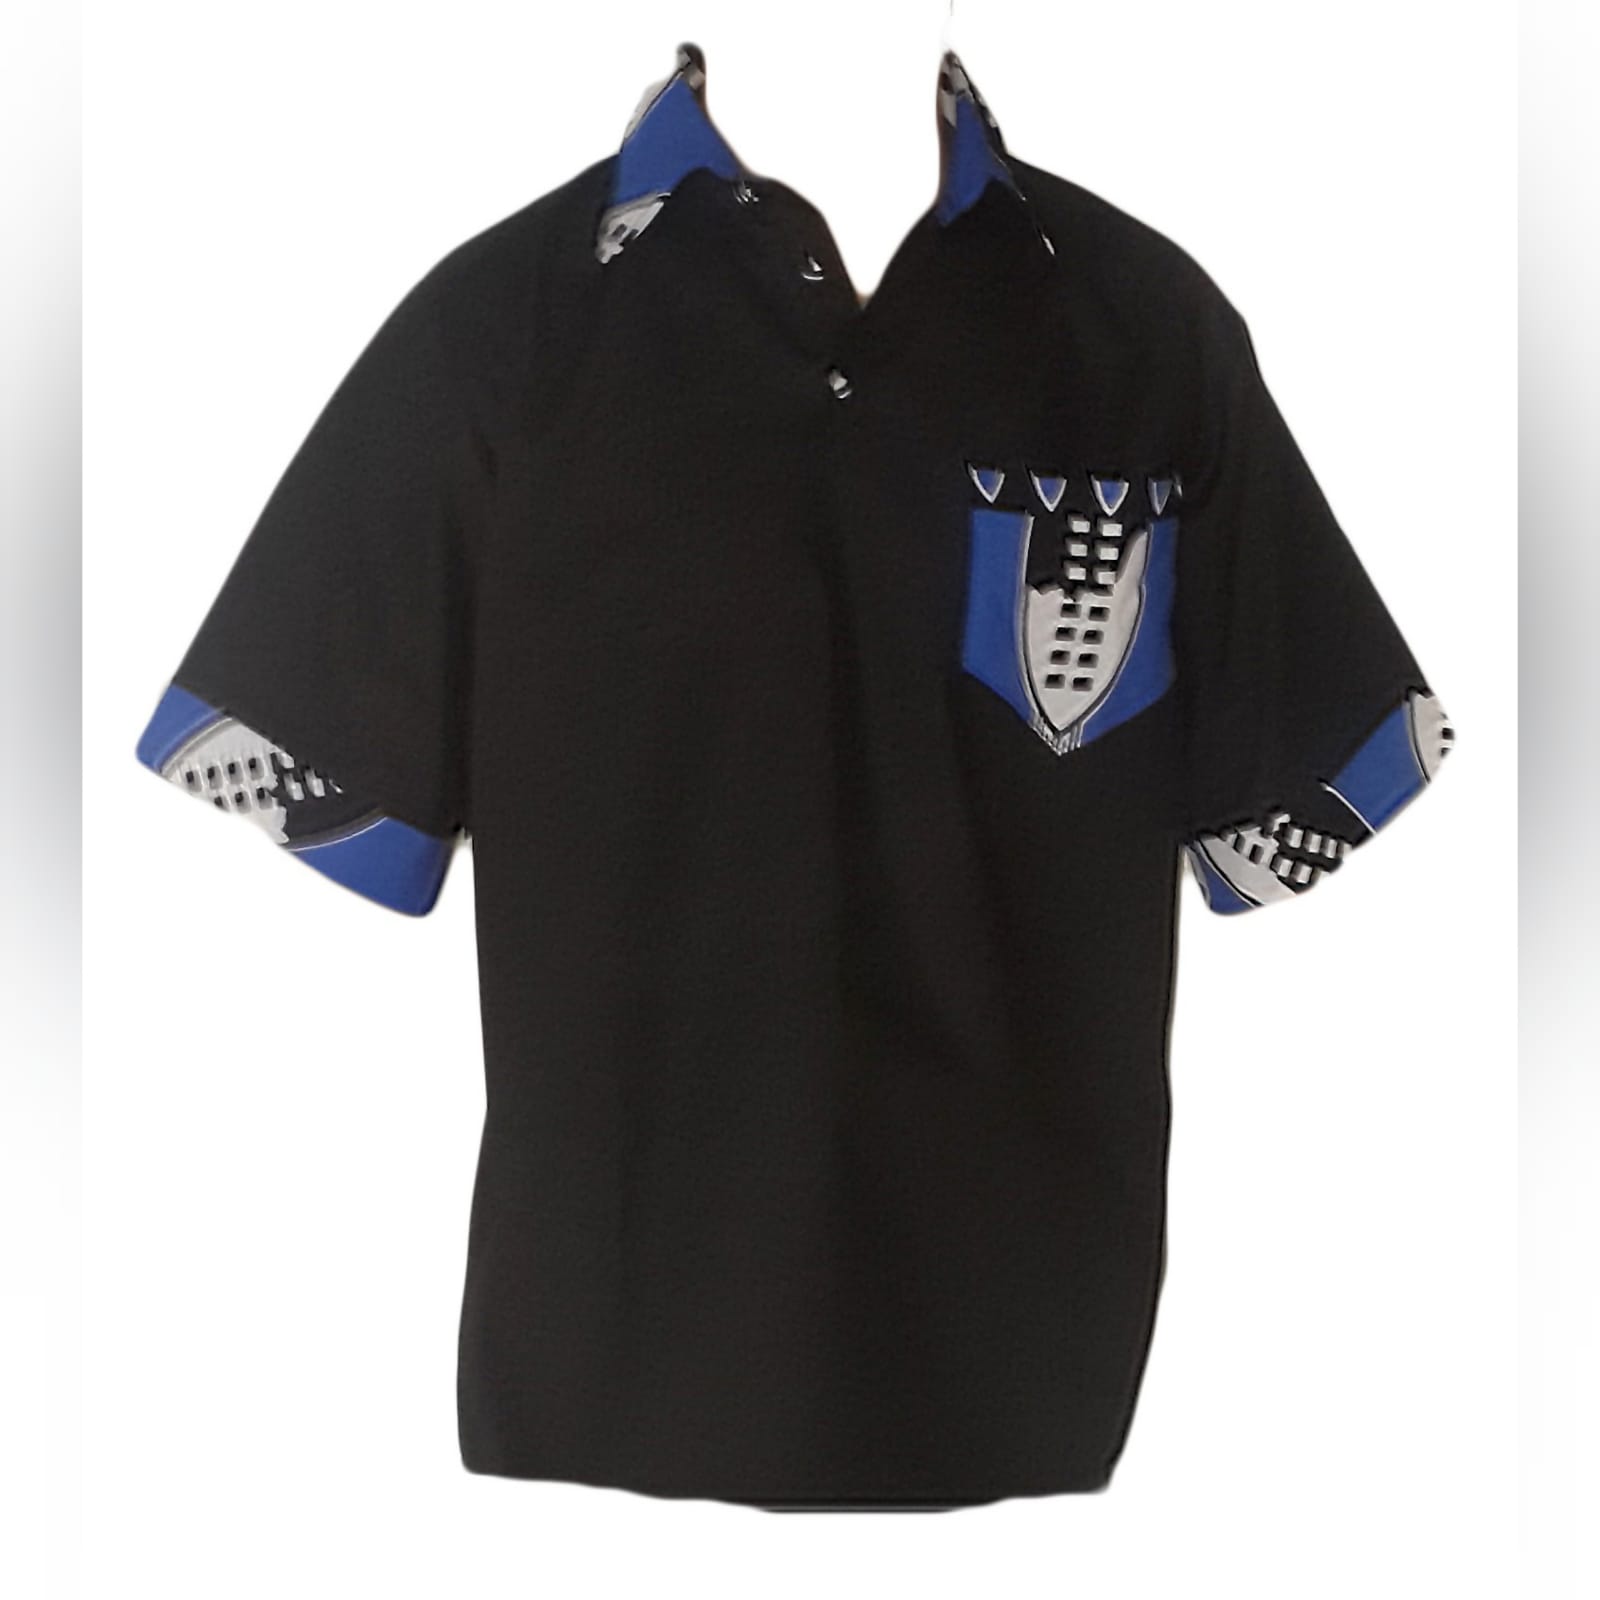 Vestido africano tradicional e camisa 5 vestido swati em azul, preto e branco moderno tradicional na altura do joelho. Com um folho na anca. Com camisa de golfe preta correspondente detalhada com tecido swati. Traje de casamento tradicional.